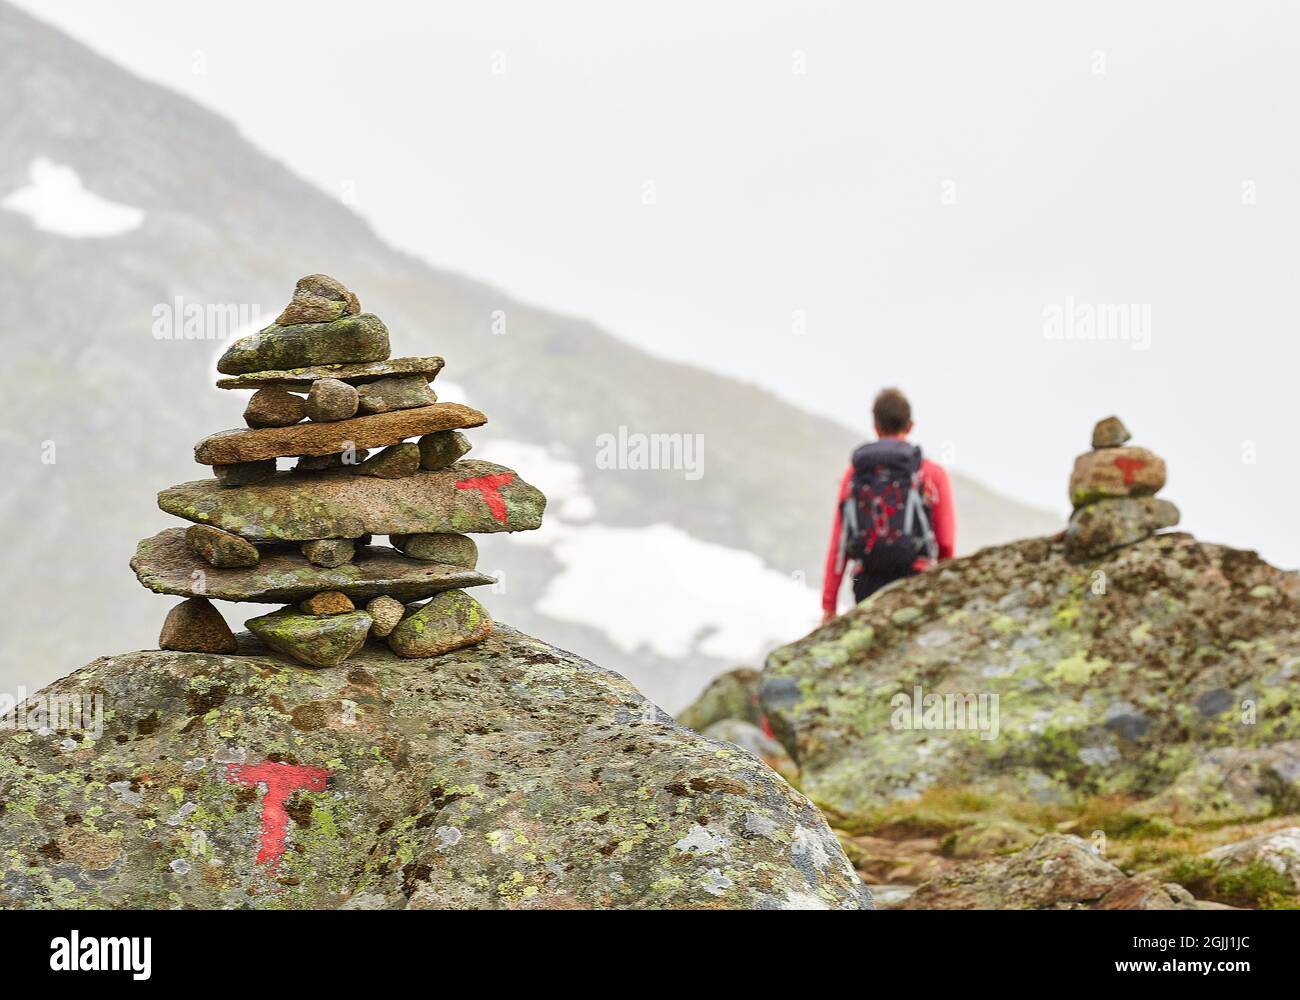 Les sentiers de montagne norvégiens sont bien marqués par les symboles T rouges et parfois élaborés cairns - Parc national de Jotunheimen centre de la Norvège Banque D'Images